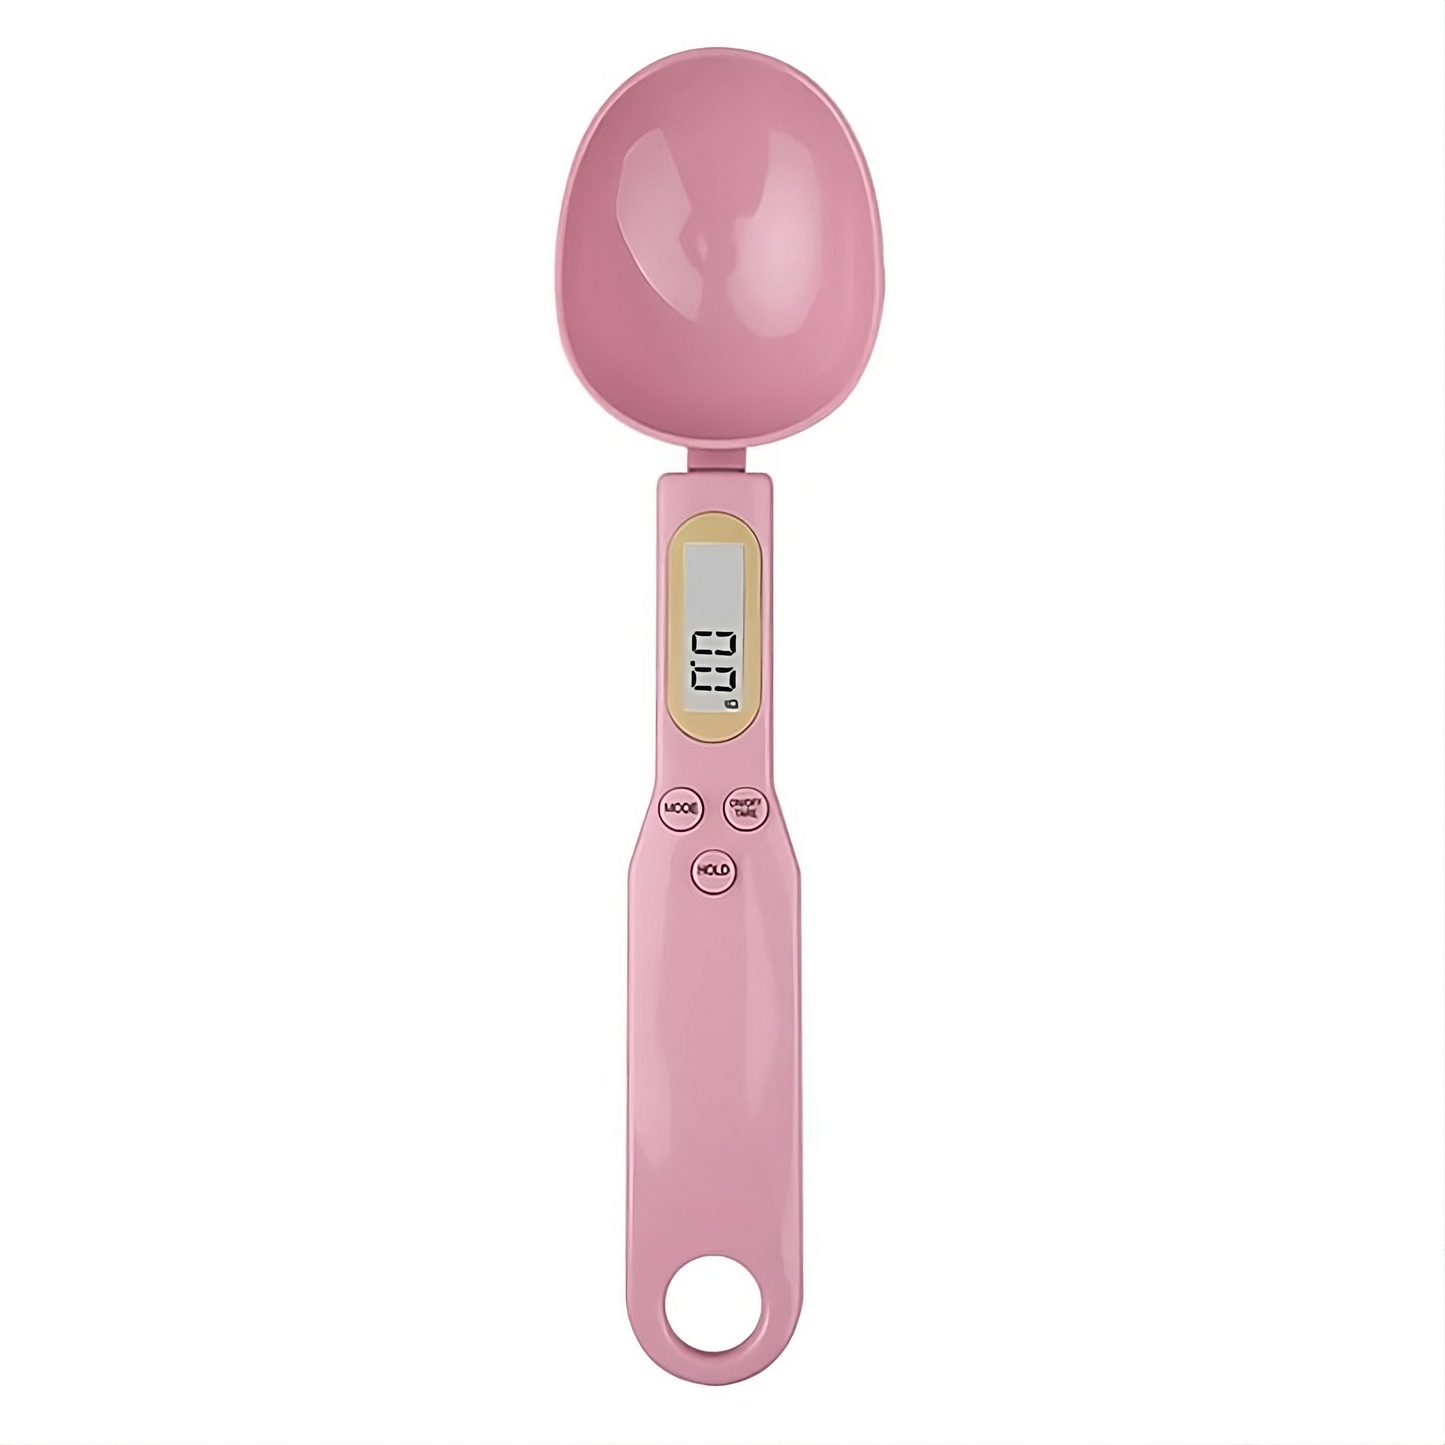 MeasureSpoon Pro™ - Miller Market Blush Pink